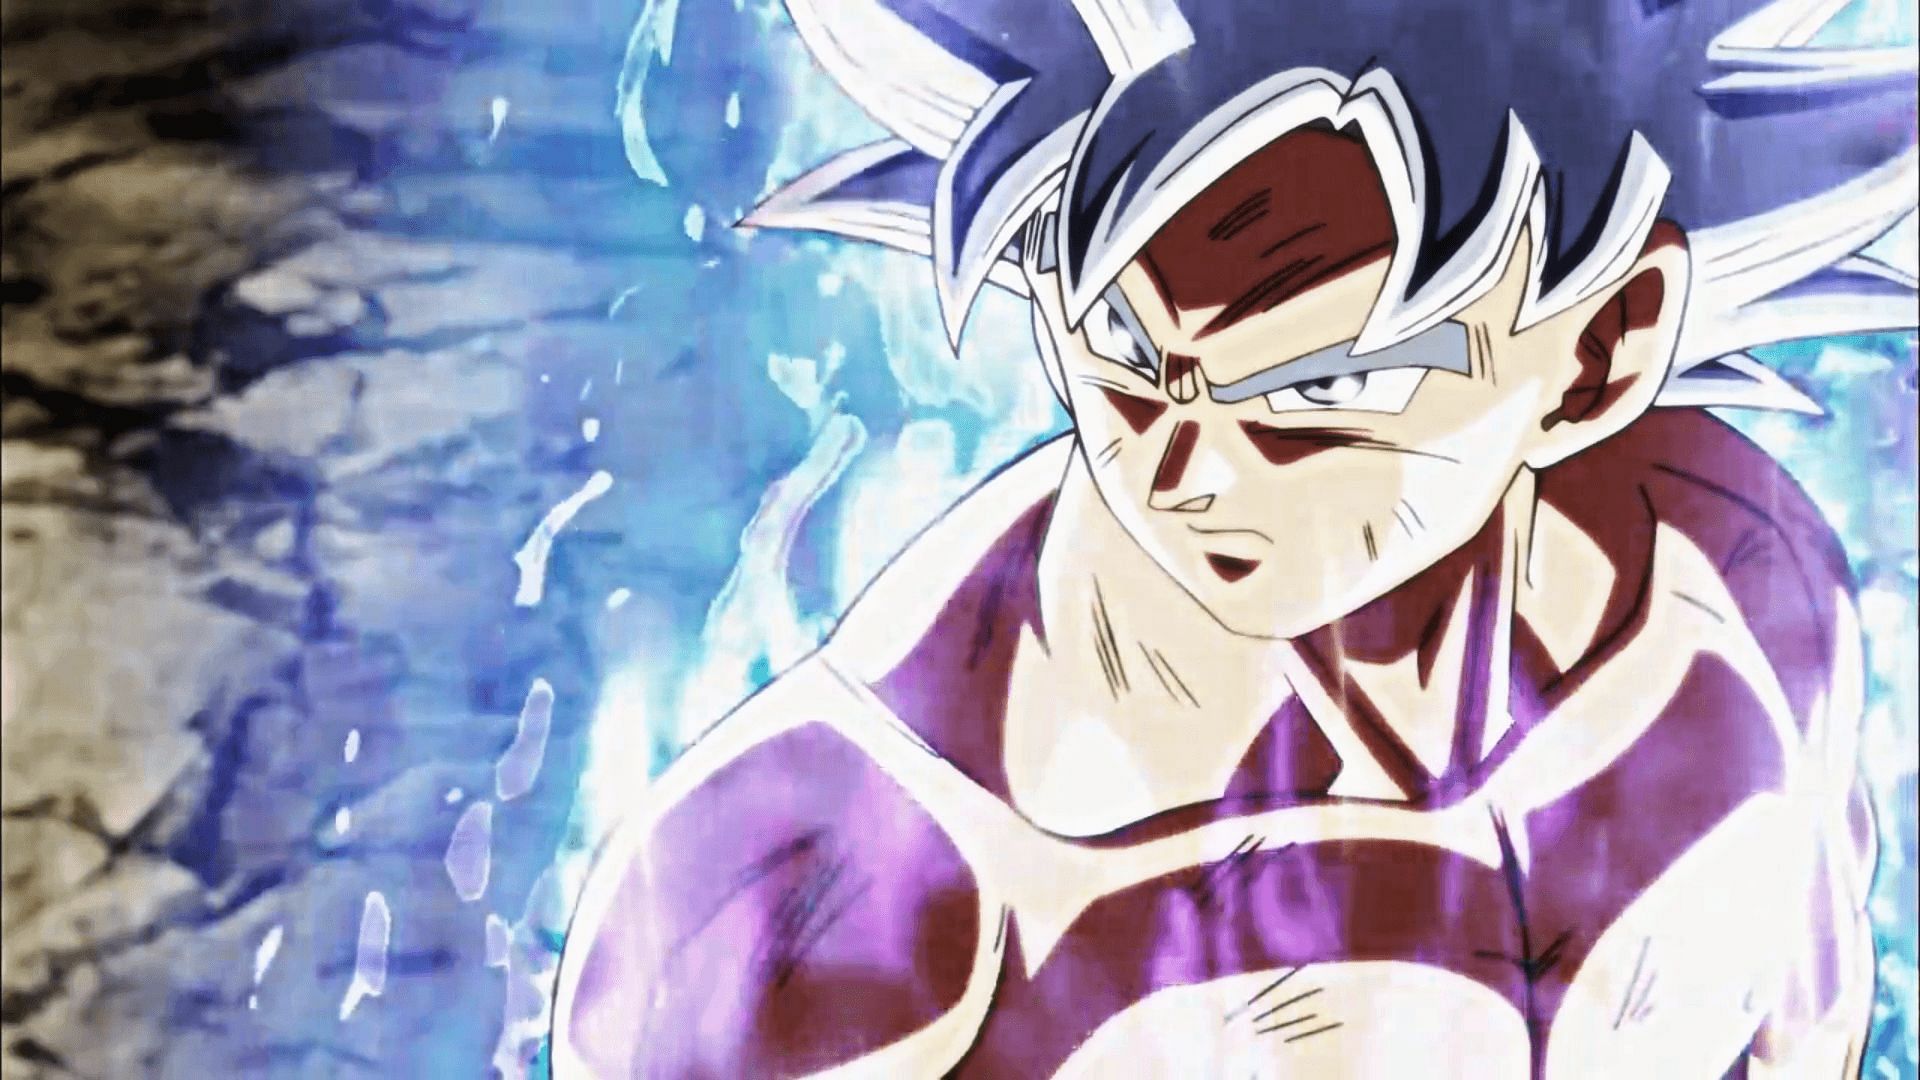 Mastered Ultra Instinct Goku (Image via Toei Animation)